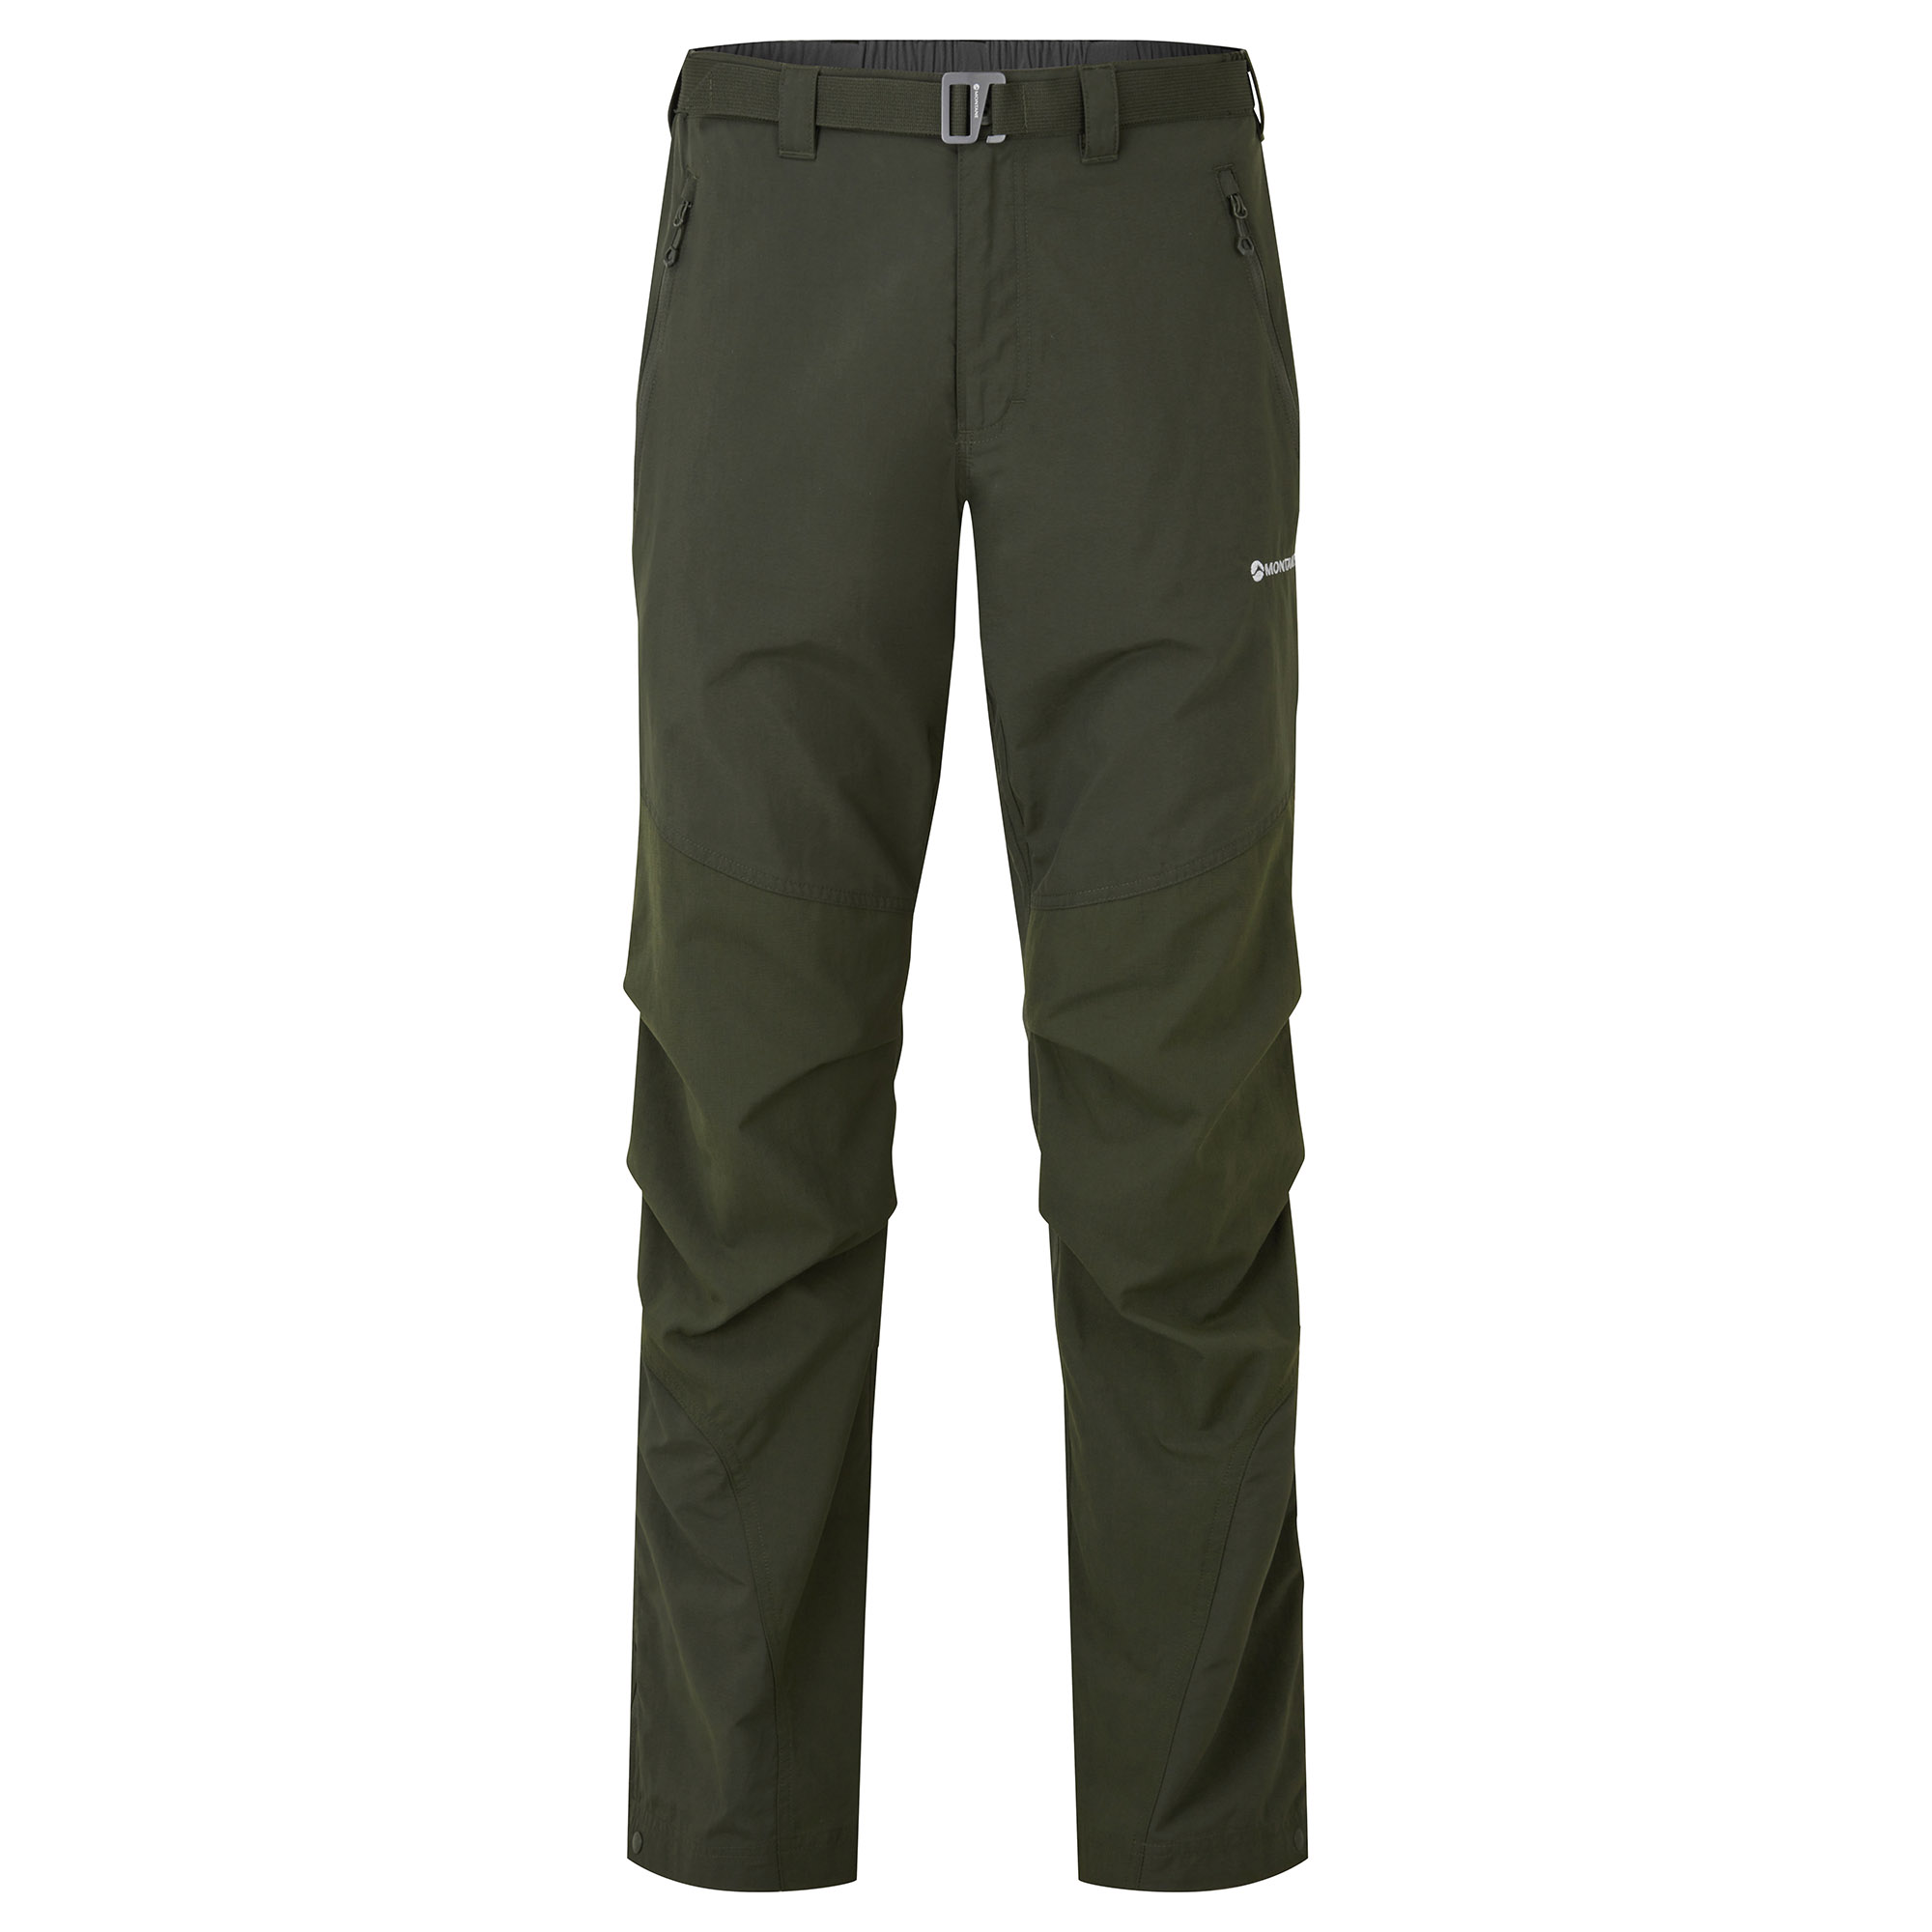 Montane pánské softshellové kalhoty Terra Pants - Prodloužené Nohavice Barva: Oak Green, Velikost: 36